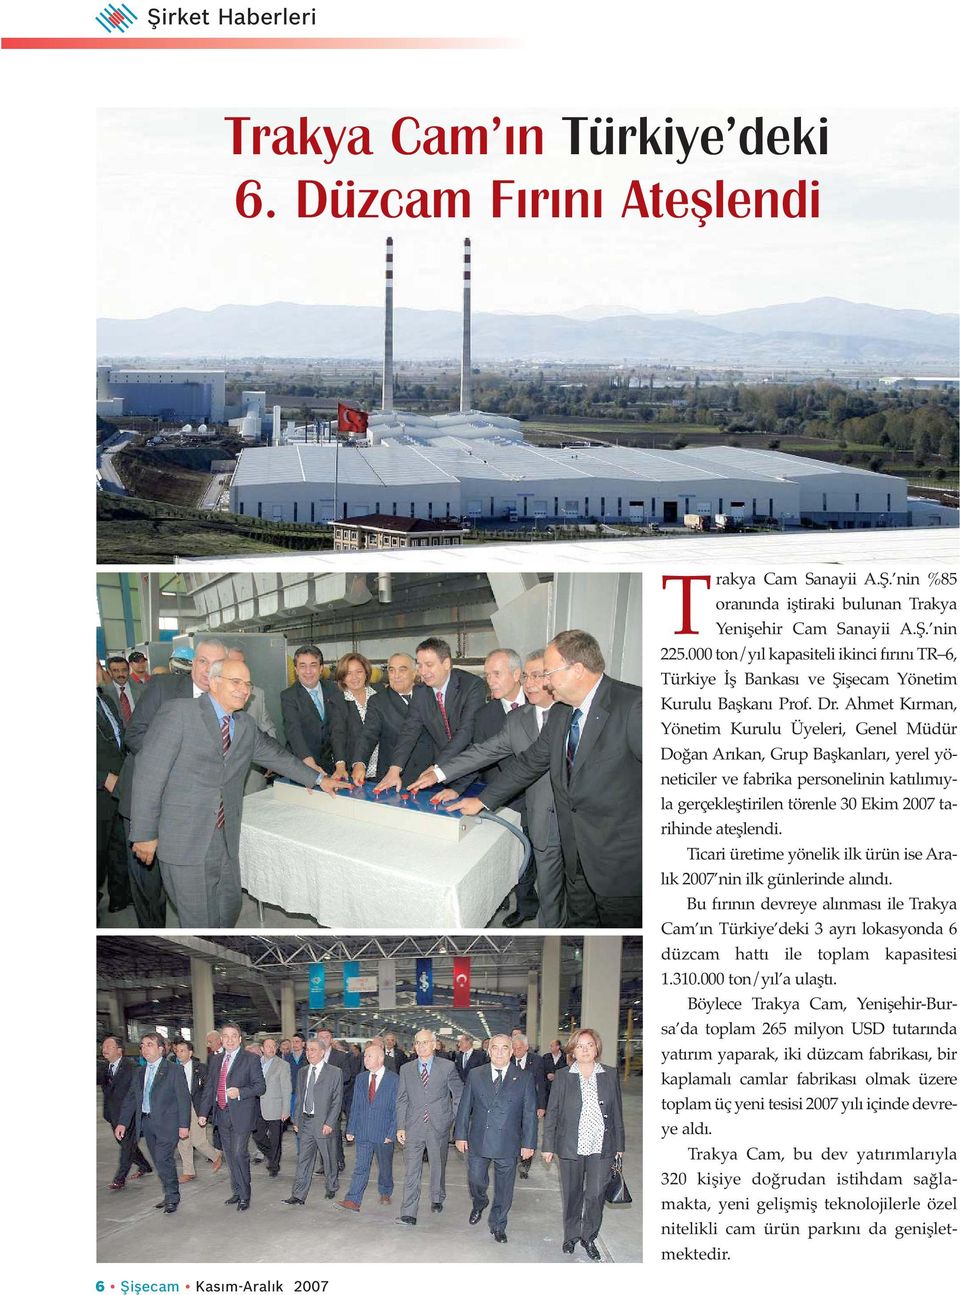 Ahmet Kırman, Yönetim Kurulu Üyeleri, Genel Müdür Doğan Arıkan, Grup Başkanları, yerel yöneticiler ve fabrika personelinin katılımıyla gerçekleştirilen törenle 30 Ekim 2007 tarihinde ateşlendi.